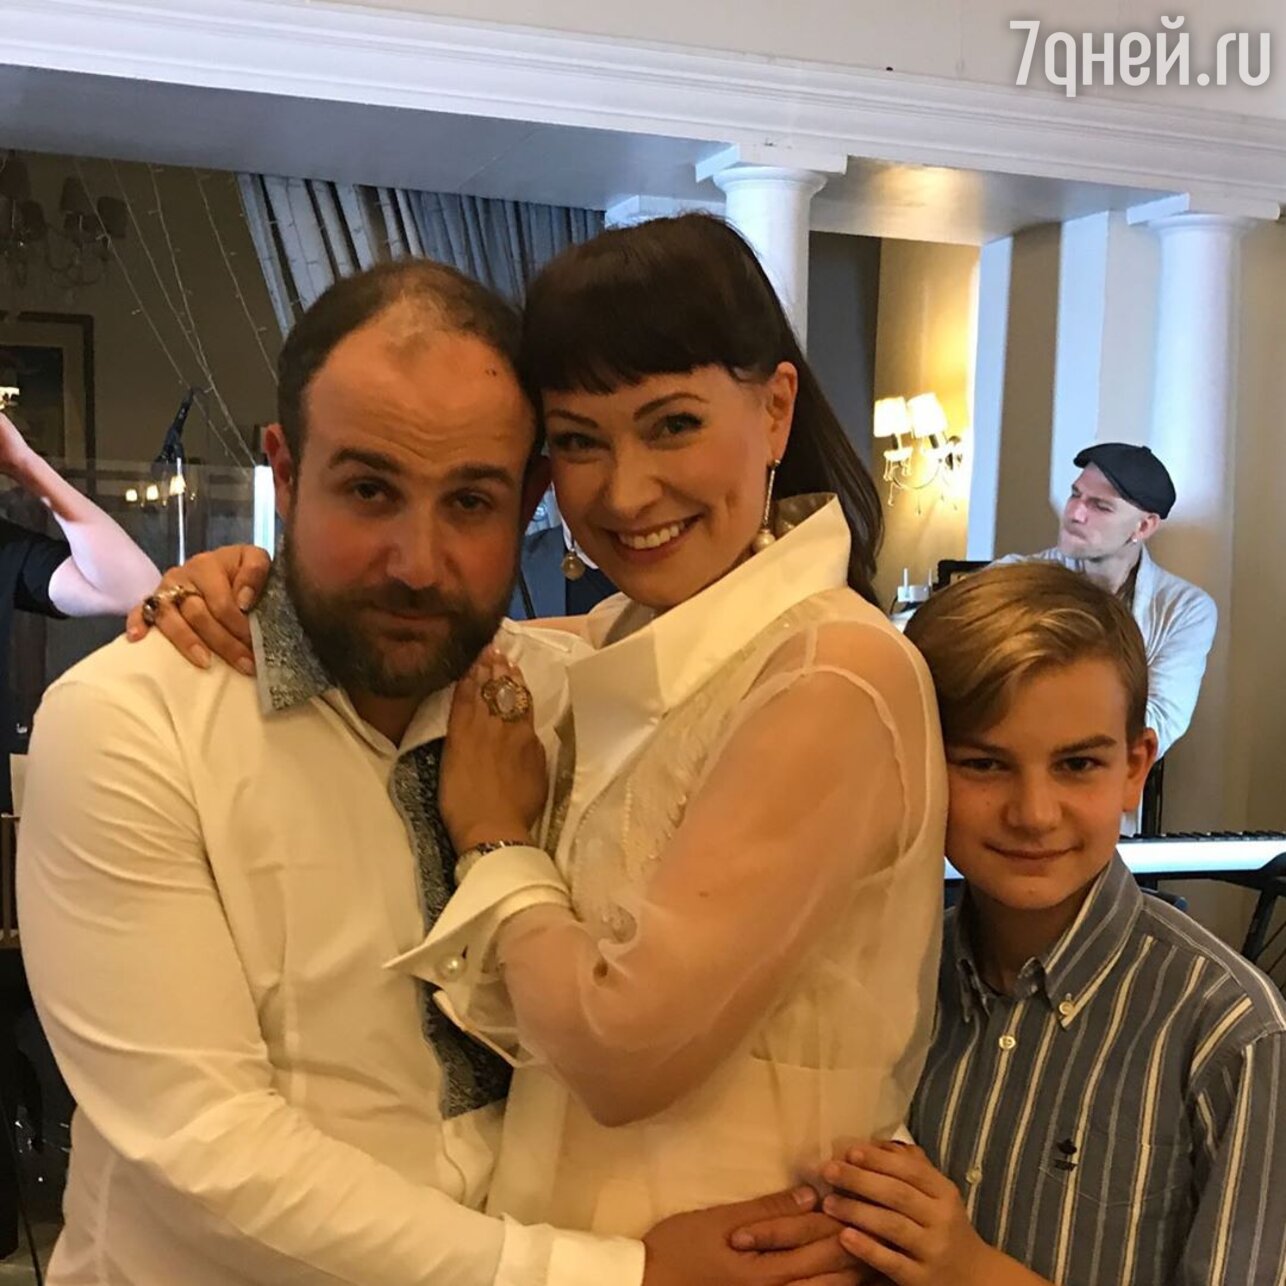 Нонна Гришаева поделилась редким фото с мужем и сыном - 7Дней.ру